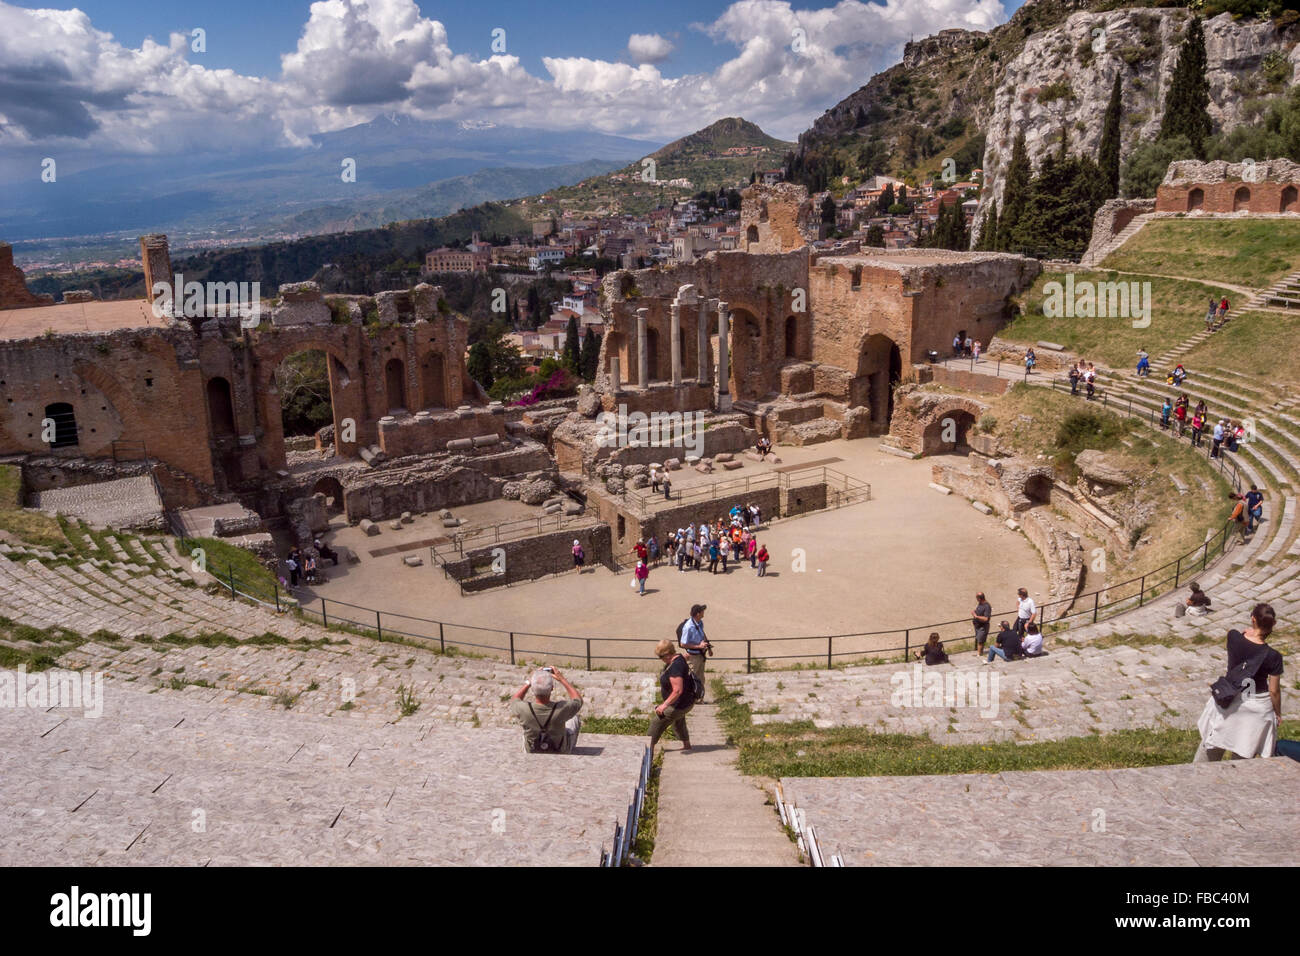 The ancient Roam amphitheatre at Taormina, Sicily, Italy. Stock Photo